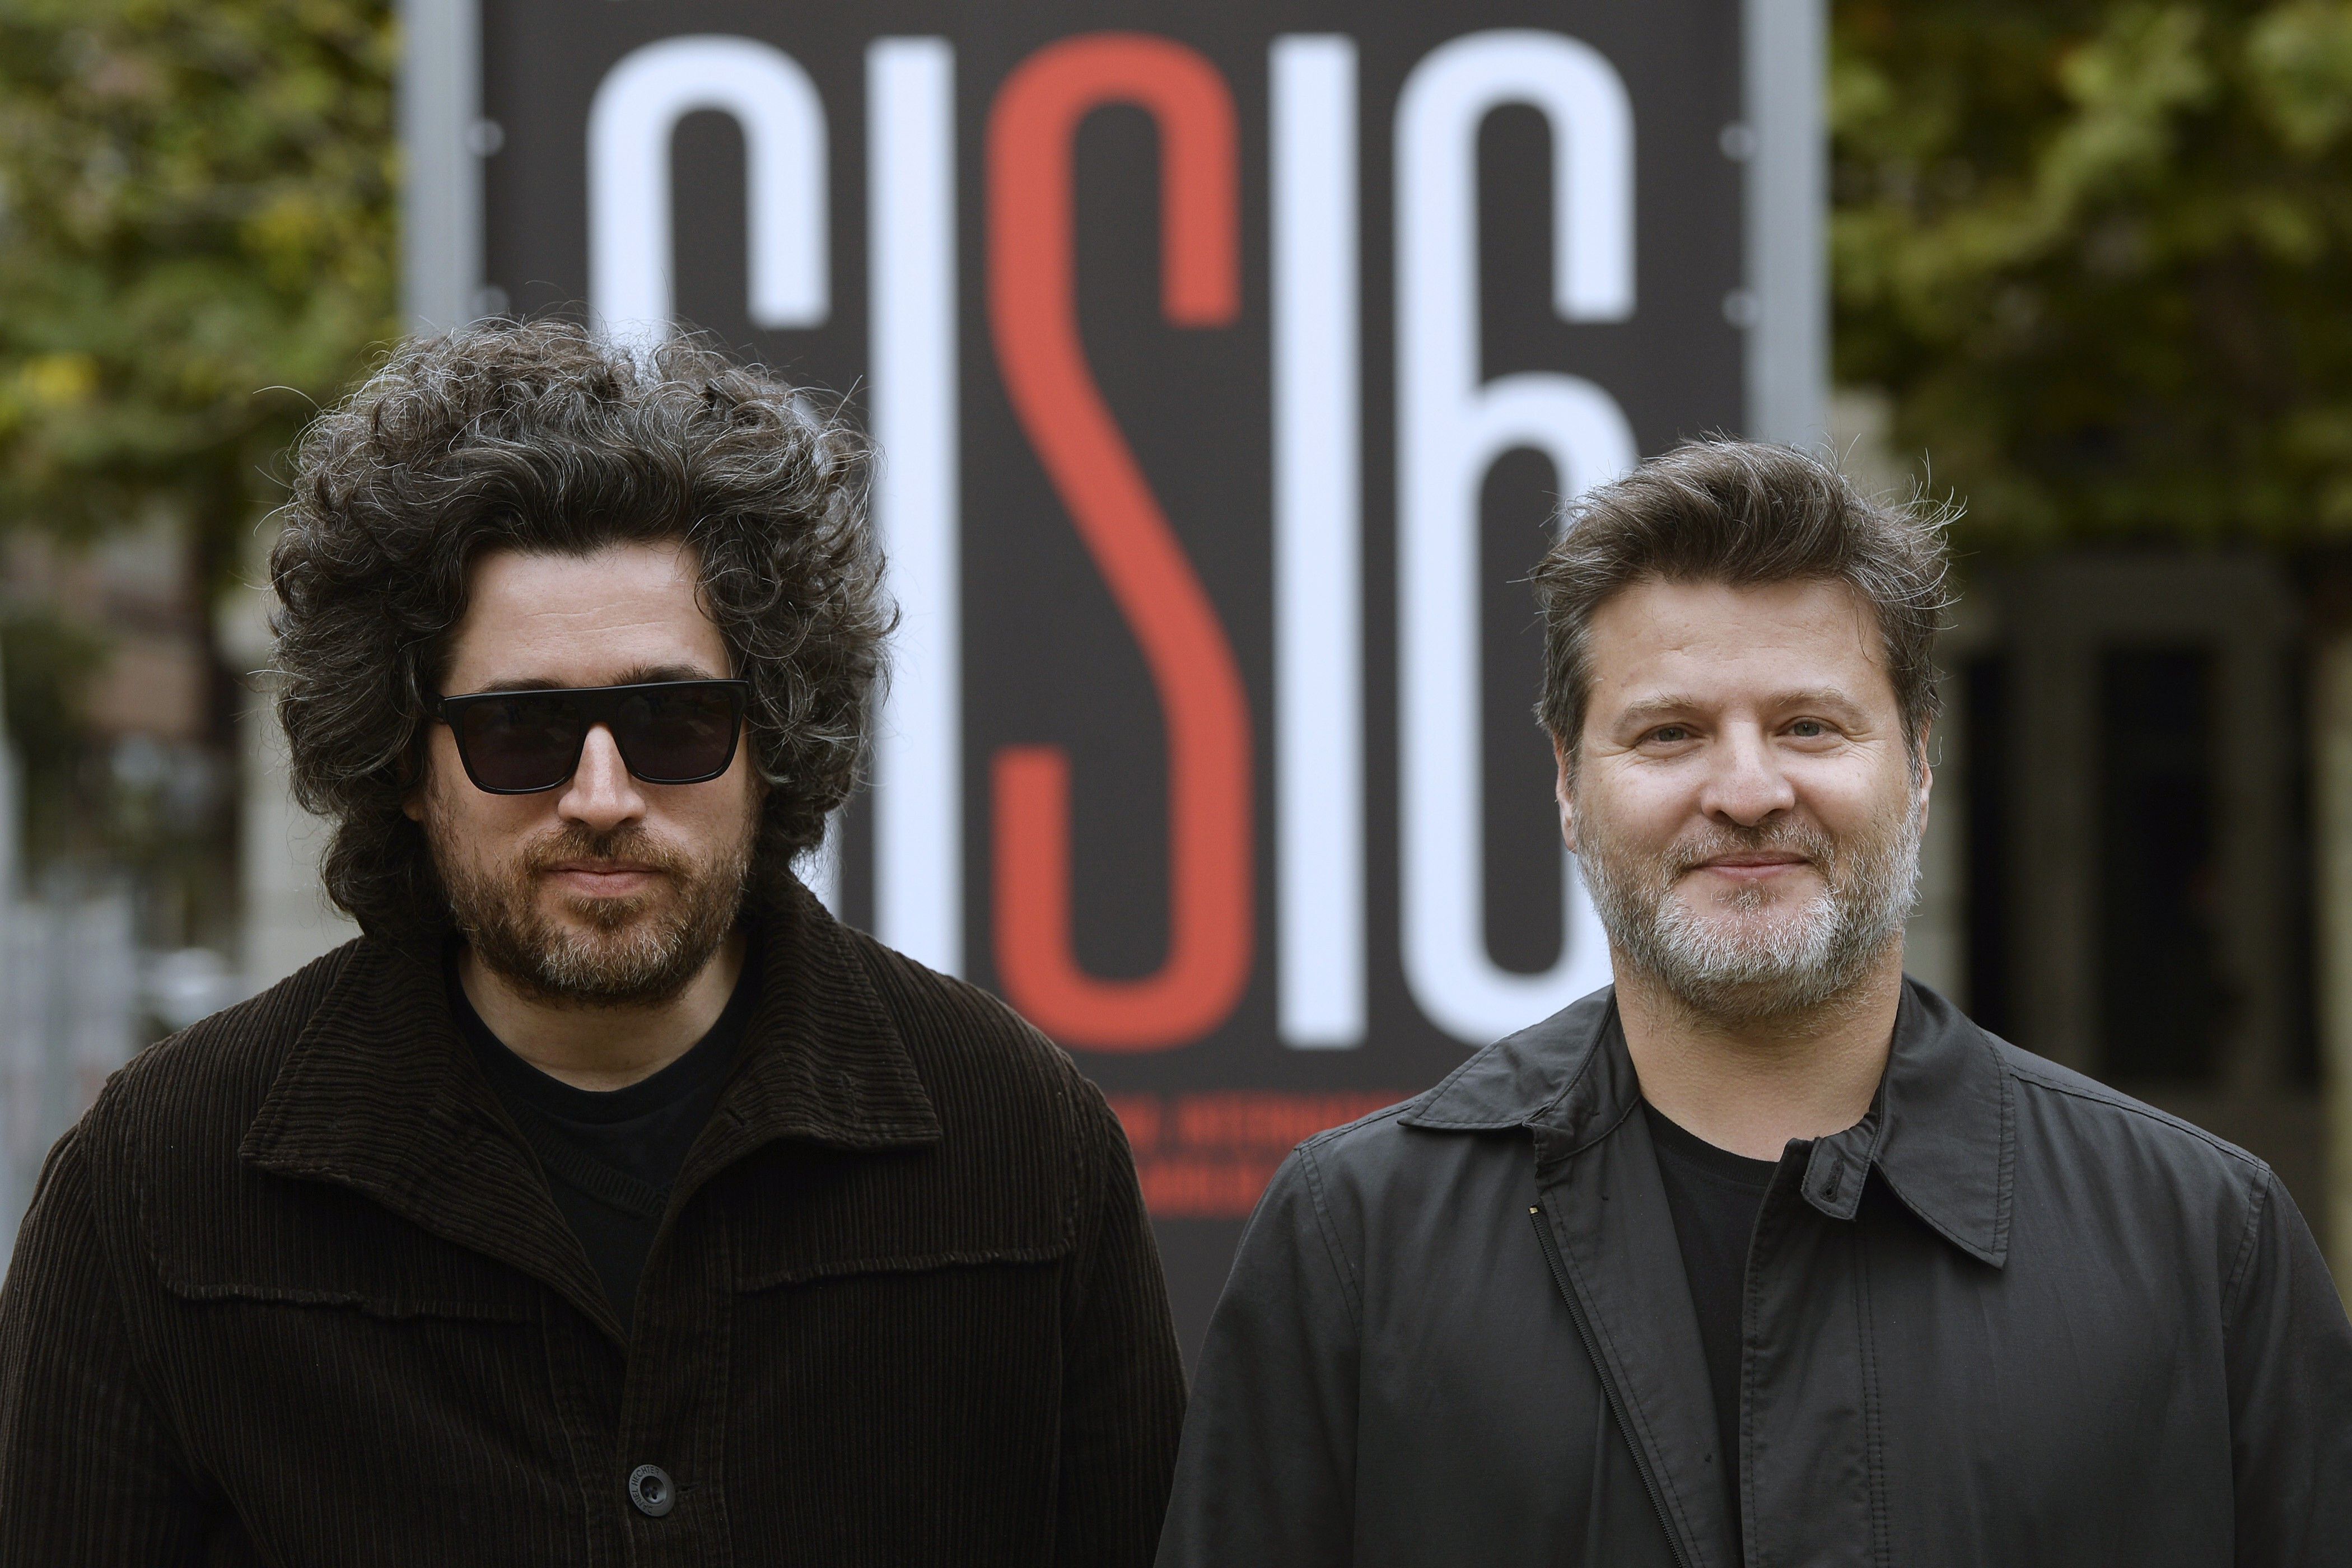 Los argentinos Gastón Duprat y Mariano Cohn, son los creadores de "Nada" que se proyectará en el Festival de San Sebastián. (EFE/Nacho Gallego/ Archivo)
